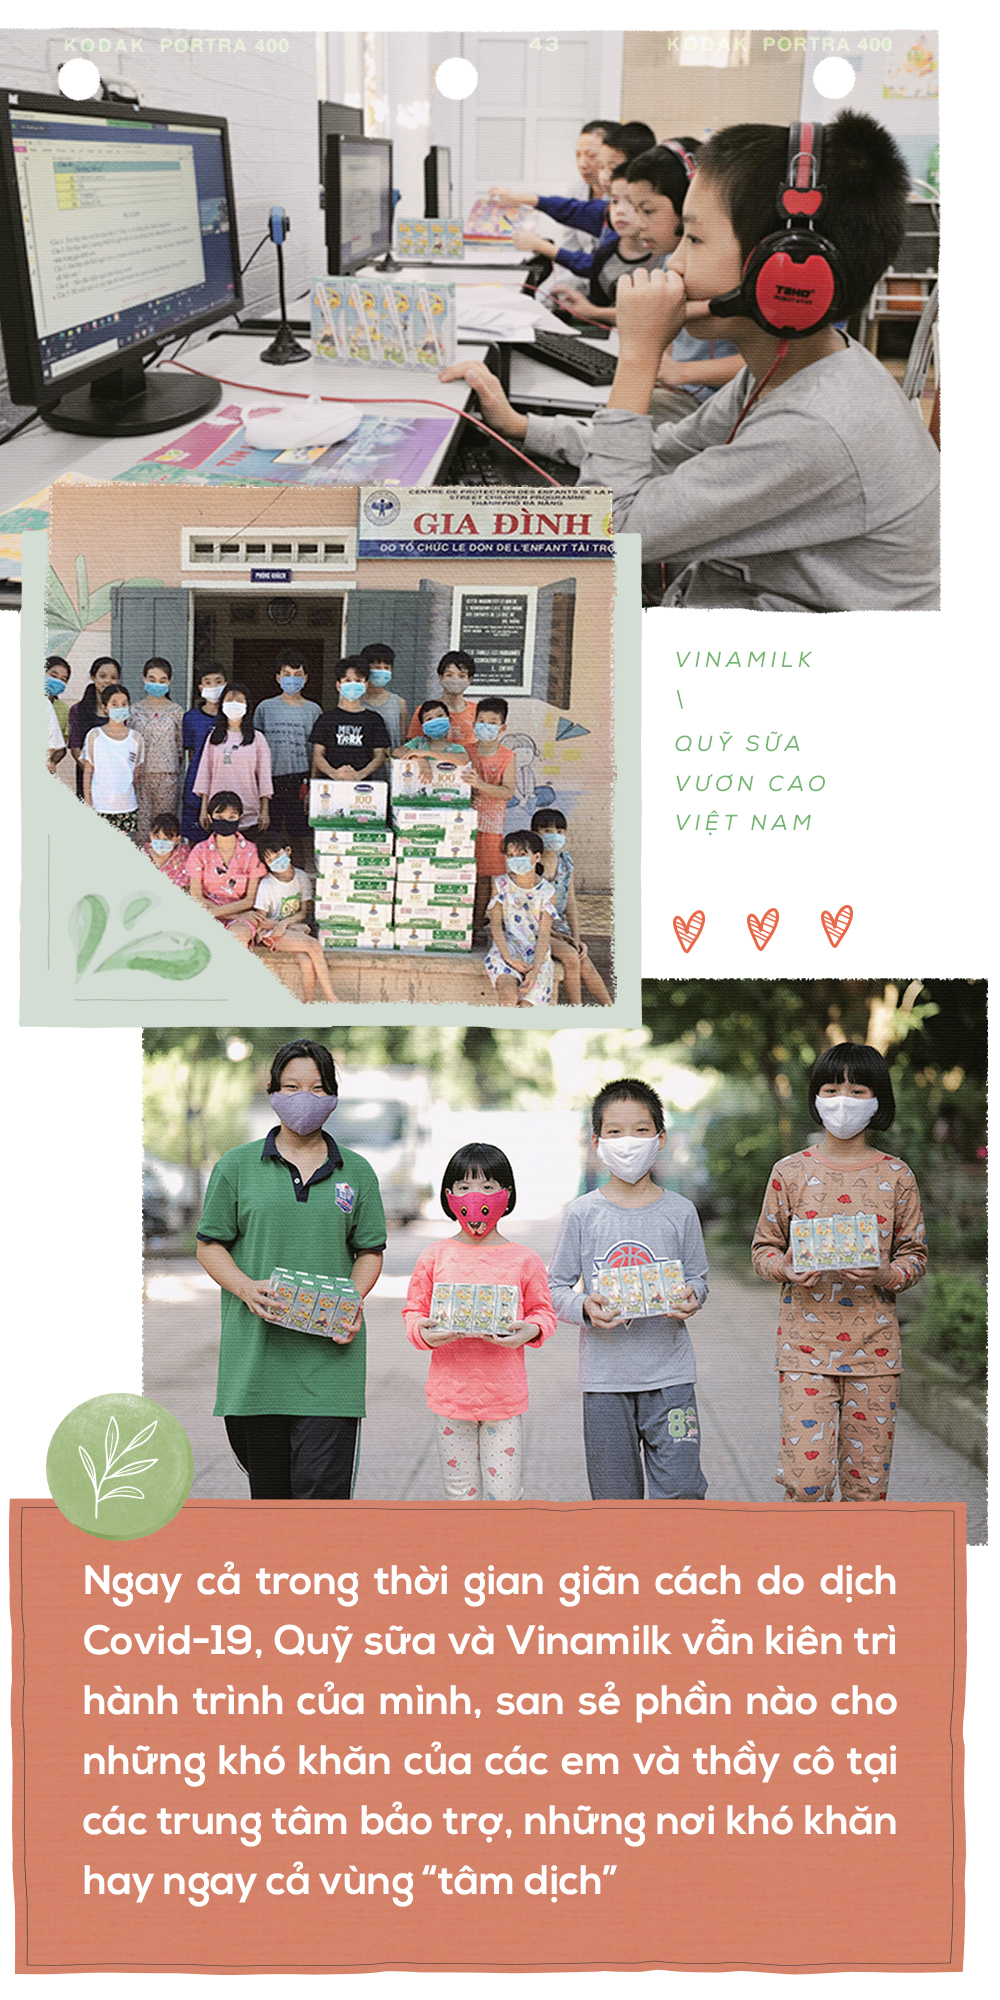 15 năm Quỹ sữa Vươn cao Việt Nam – hành trình của những điểm chạm yêu thương - Ảnh 3.